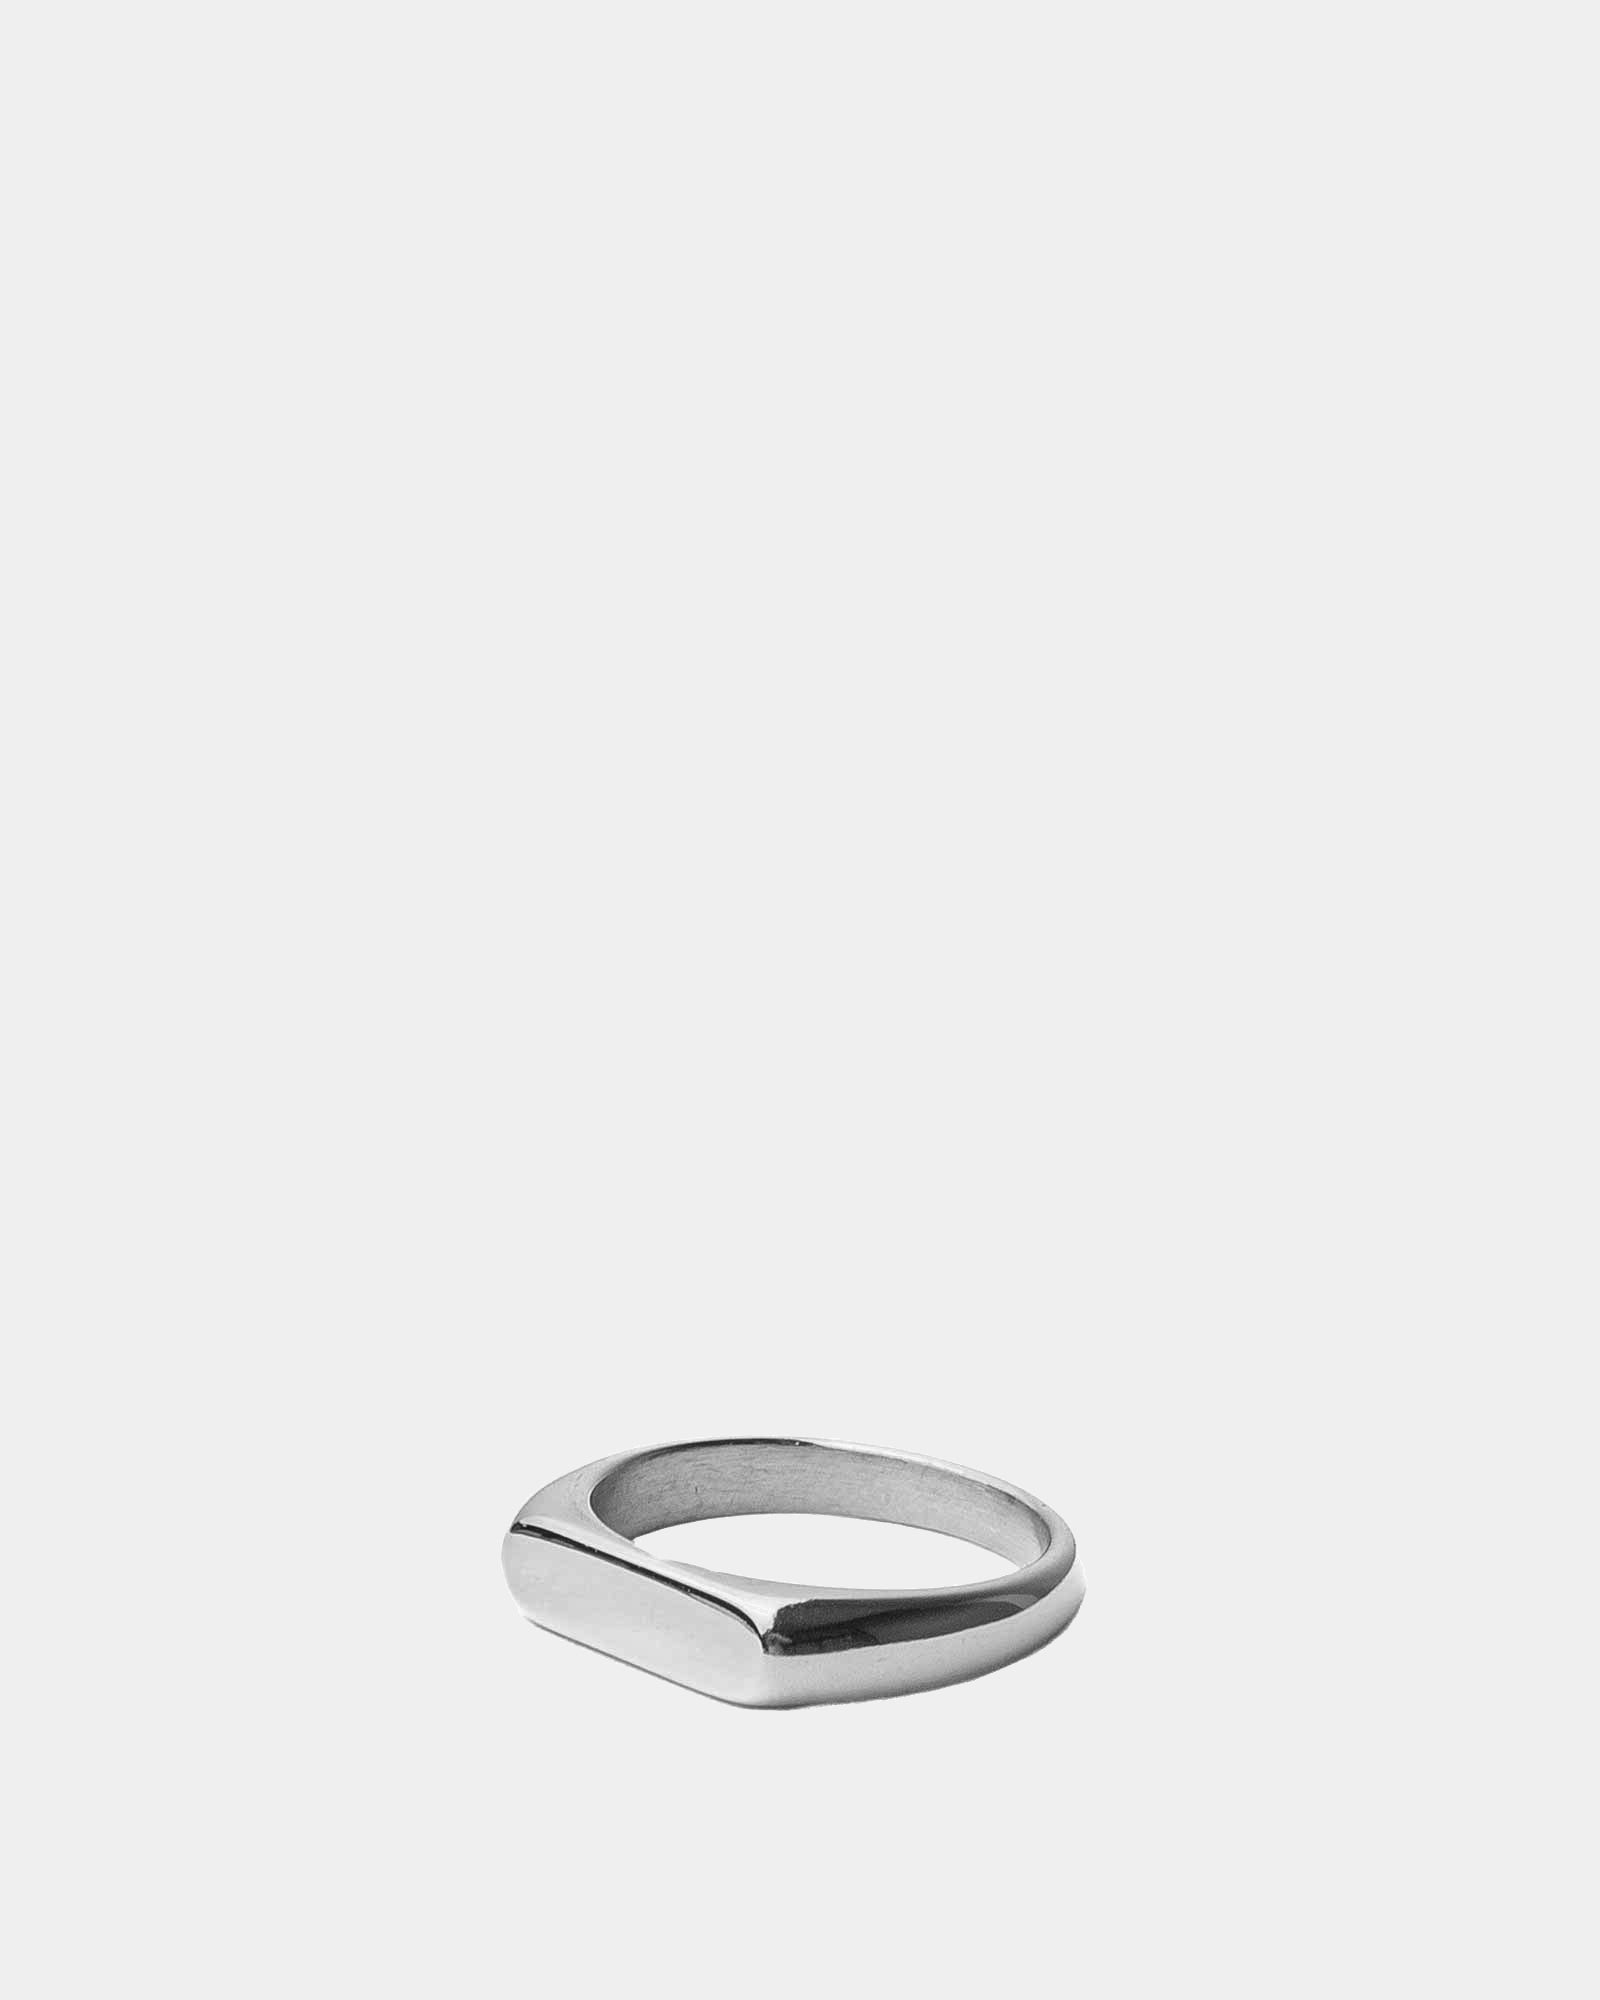 Anello Flat Top - Argento Acciaio inossidabile - Acquista anelli online - Anelli unisex in acciaio inossidabile - Dicci